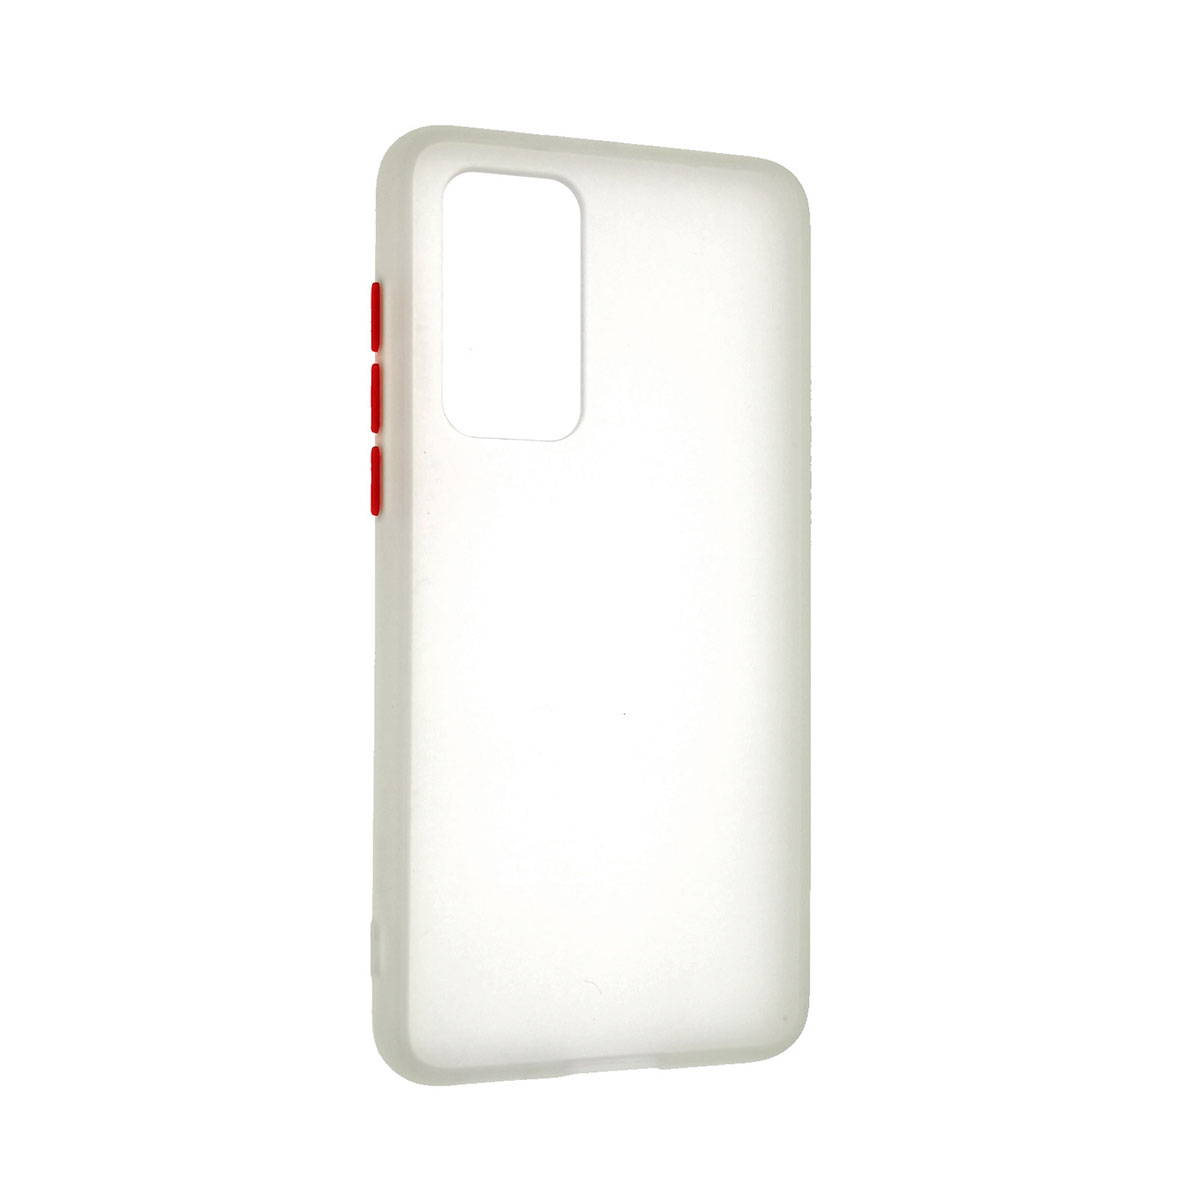 Чехол накладка SKIN SHELL для HUAWEI P40 (ANA-NX9), пластик, силикон, цвет белый.